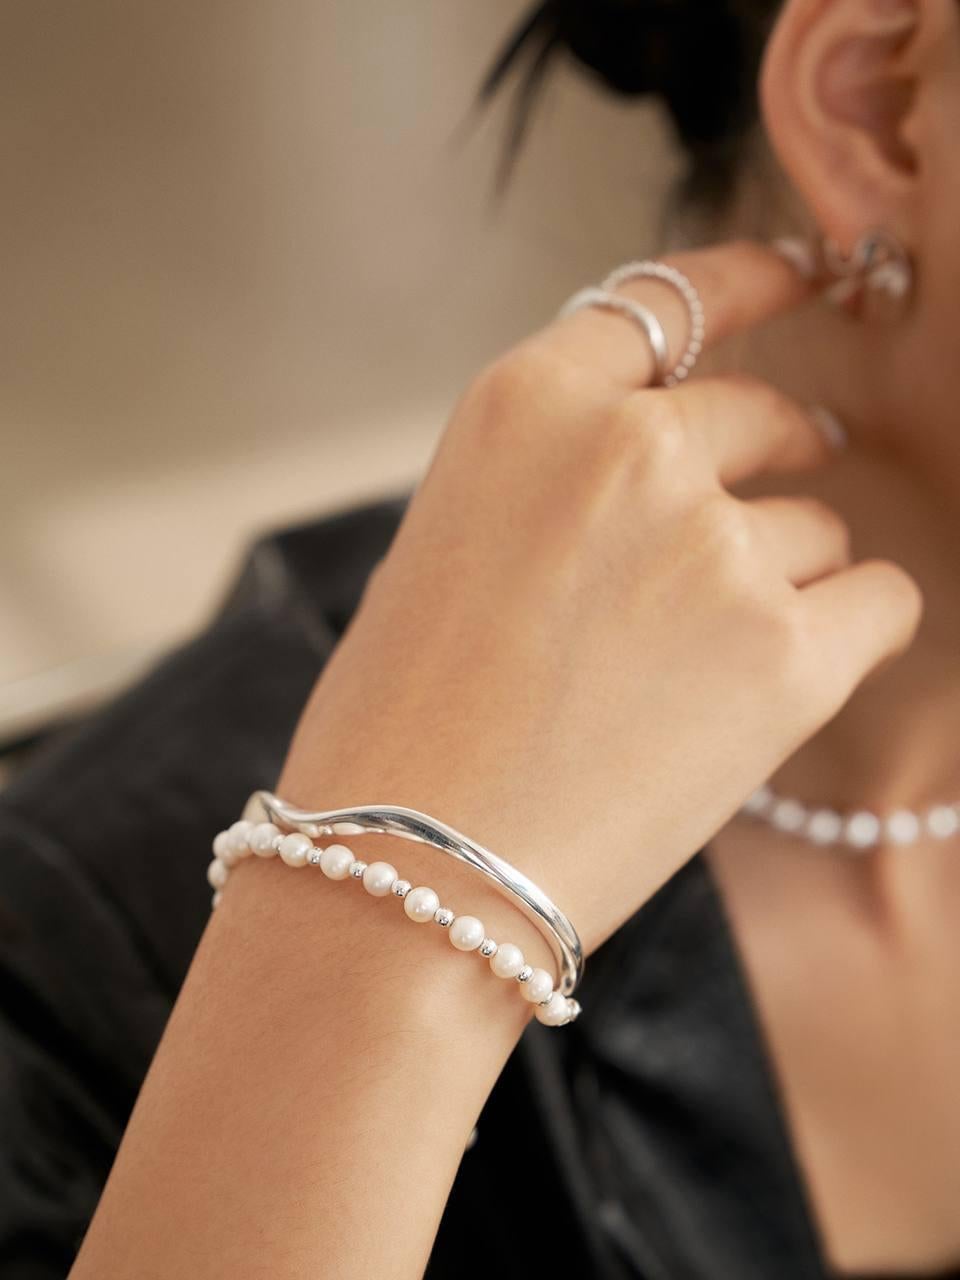 SKU : FT-0010
MATERIAL : Argent sterling 18K plaqué blanc/ Perles d'eau douce naturelles
Longueur : Environ 17 cm + 3 cm de chaîne d'extension
Taille des perles : Chaque perle mesure environ 4-5 mm
